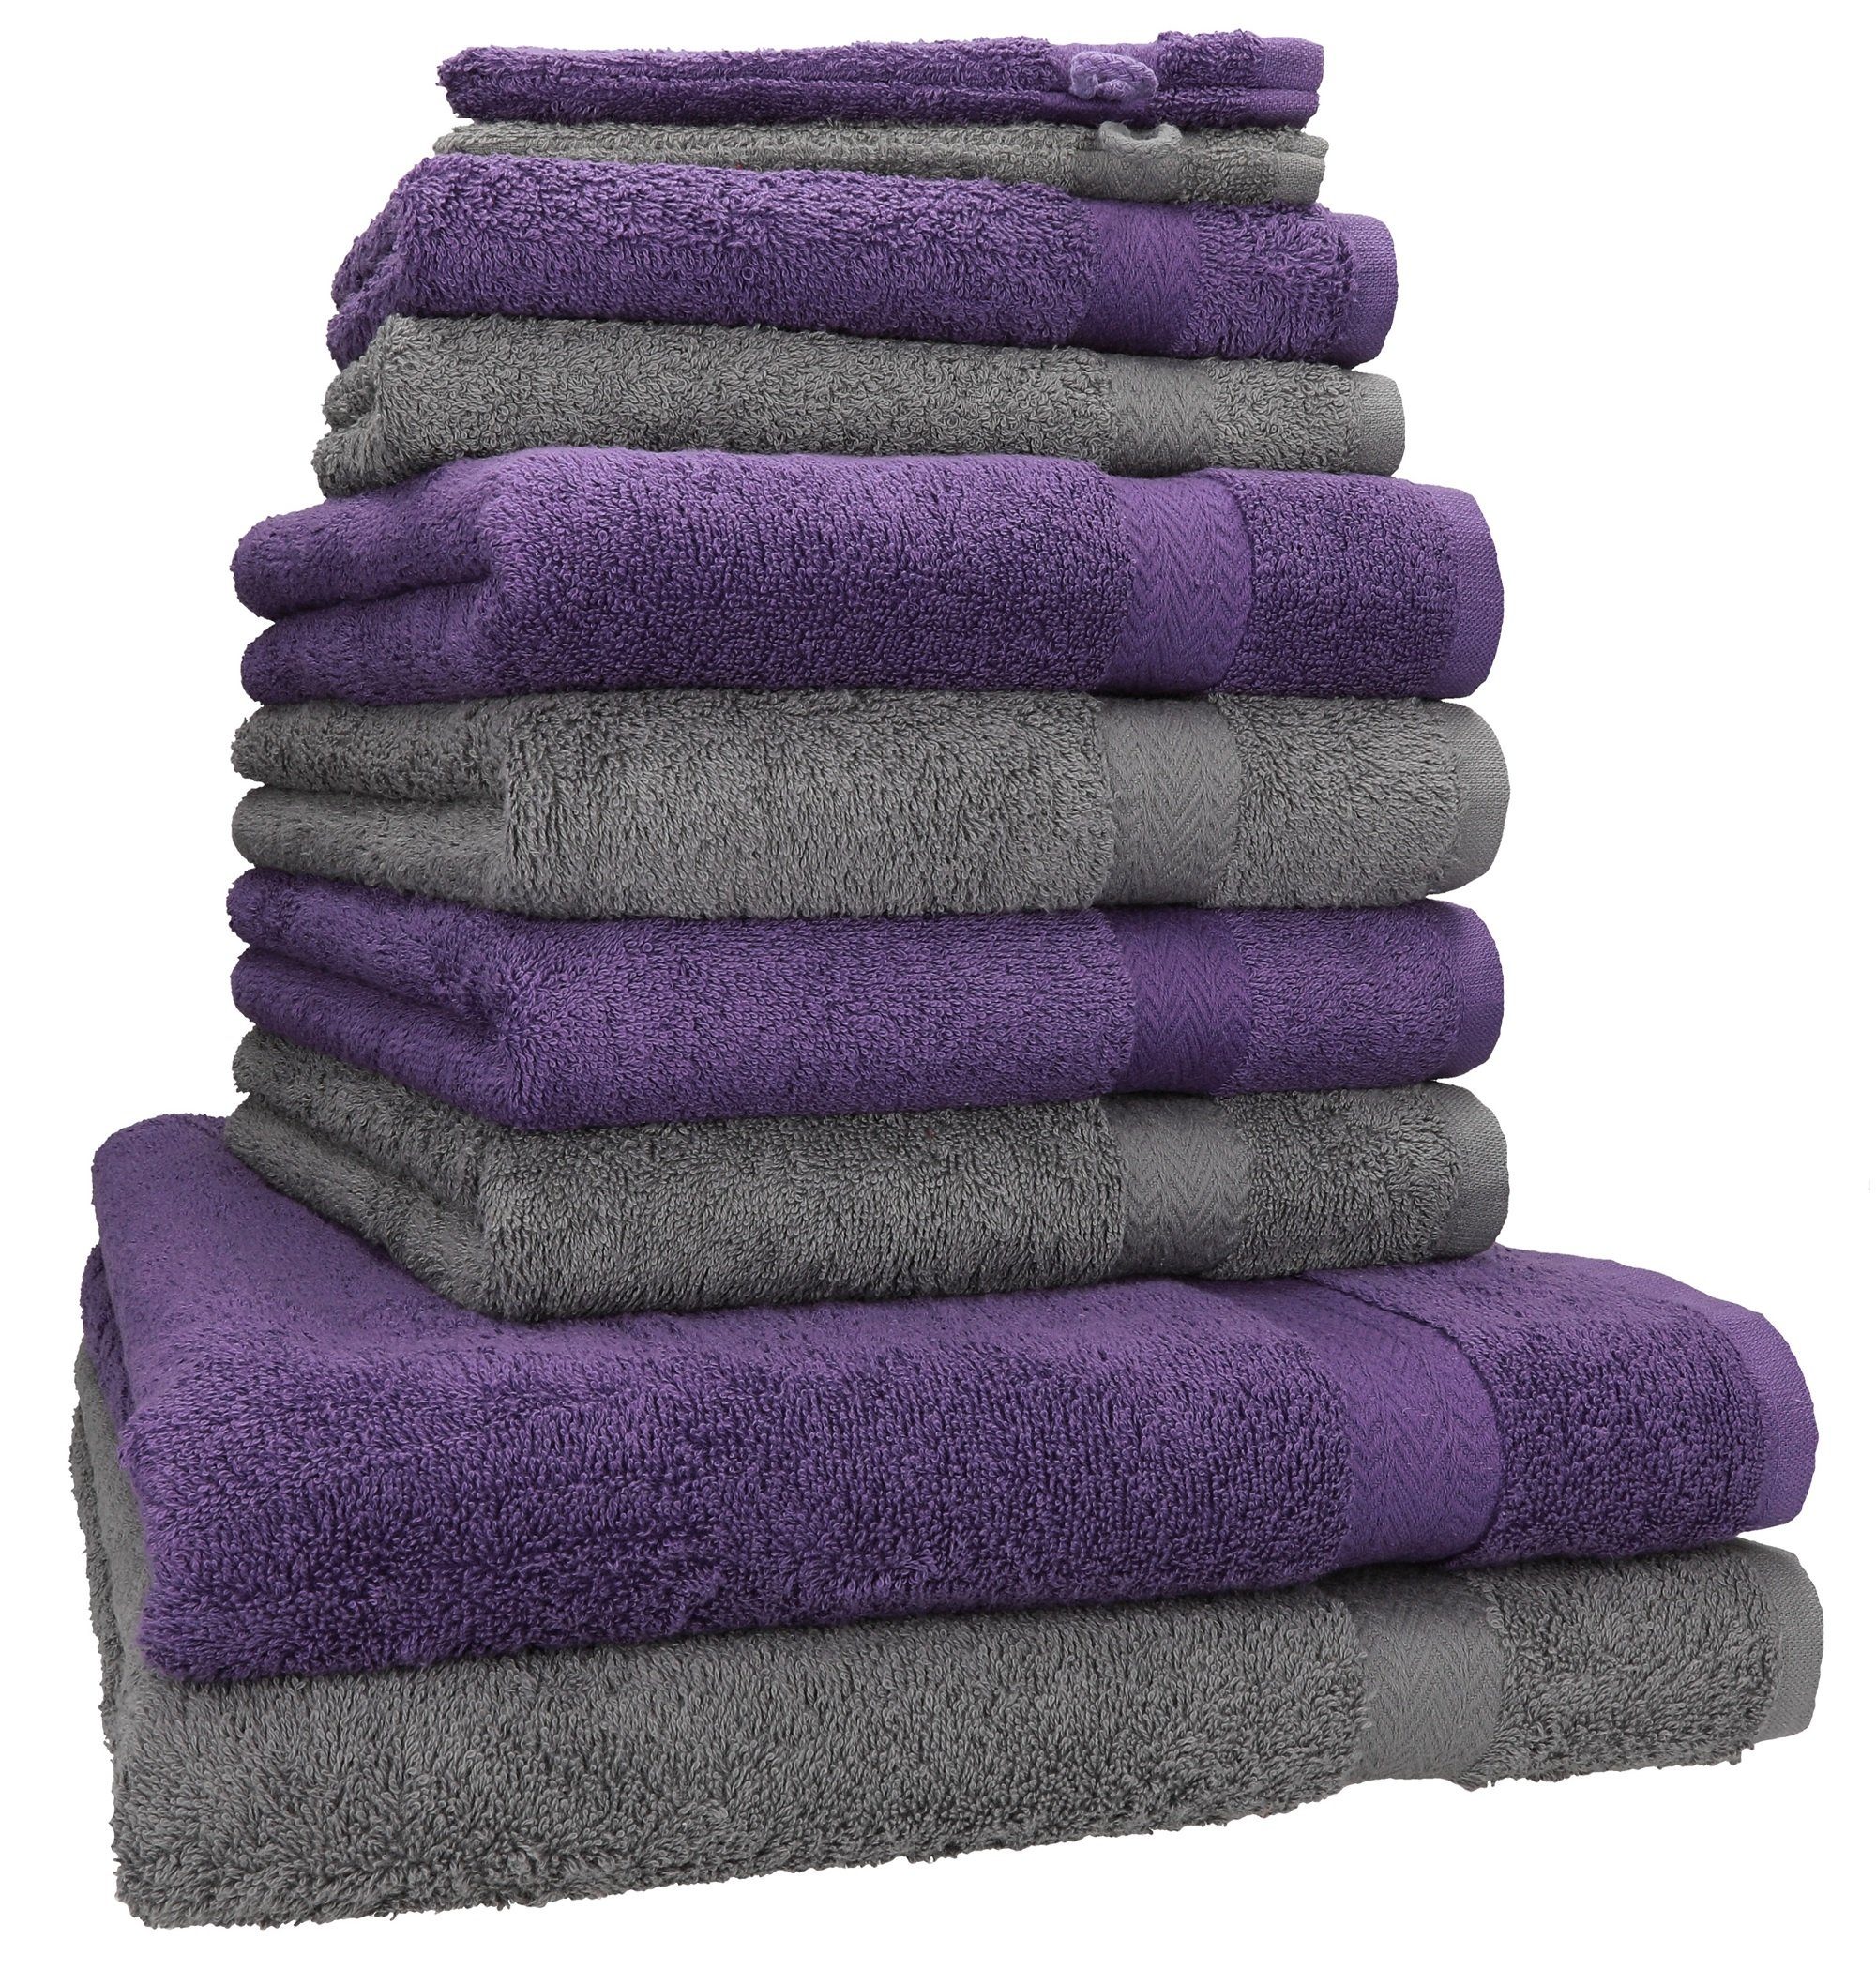 Betz Handtuch Set 10-tlg. Handtuch-Set Premium Farbe Lila & Anthrazit, 100% Baumwolle, (10-tlg)